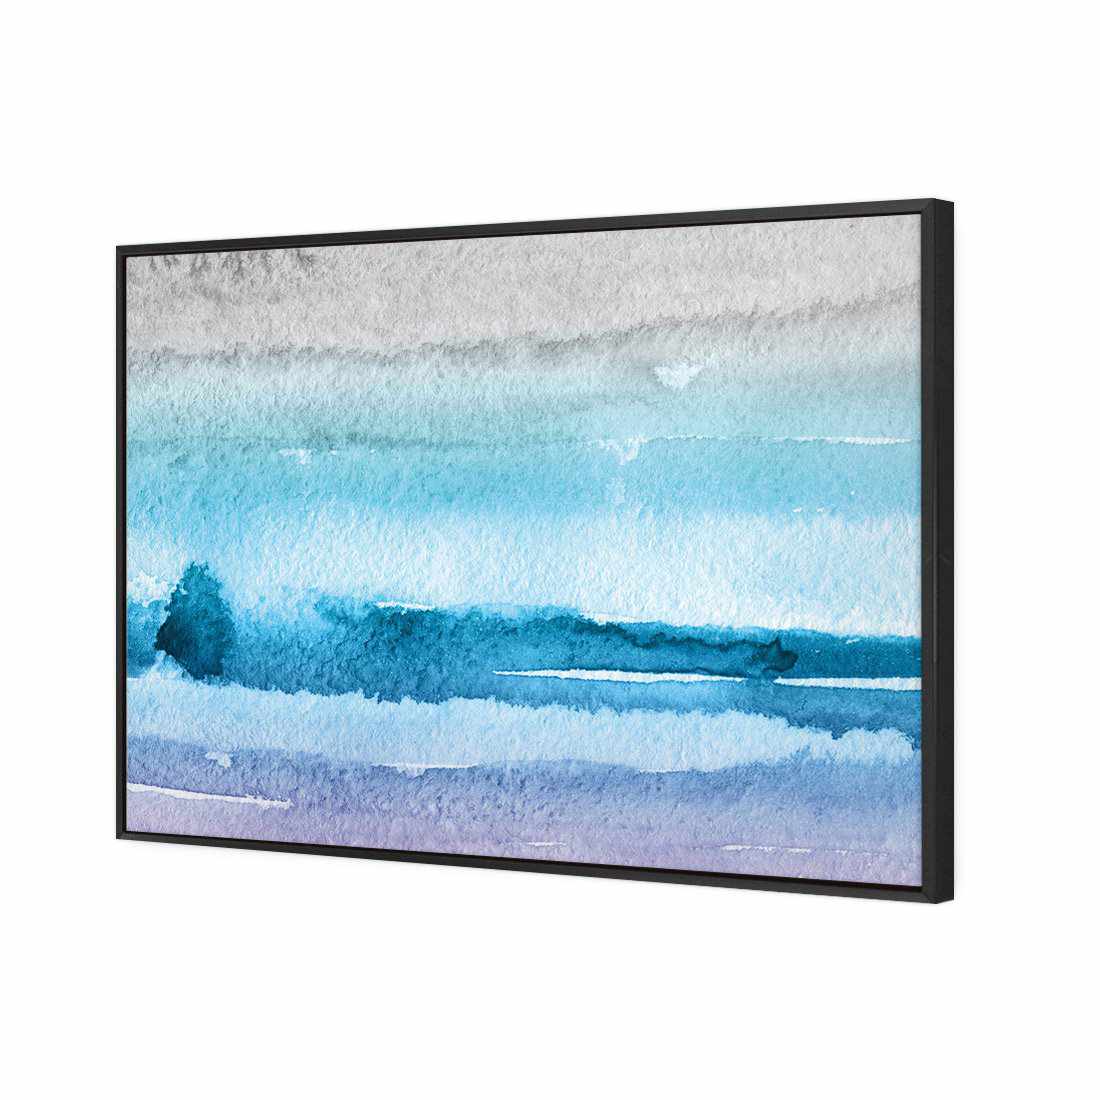 Aquarelle Canvas Art-Canvas-Wall Art Designs-45x30cm-Canvas - Black Frame-Wall Art Designs